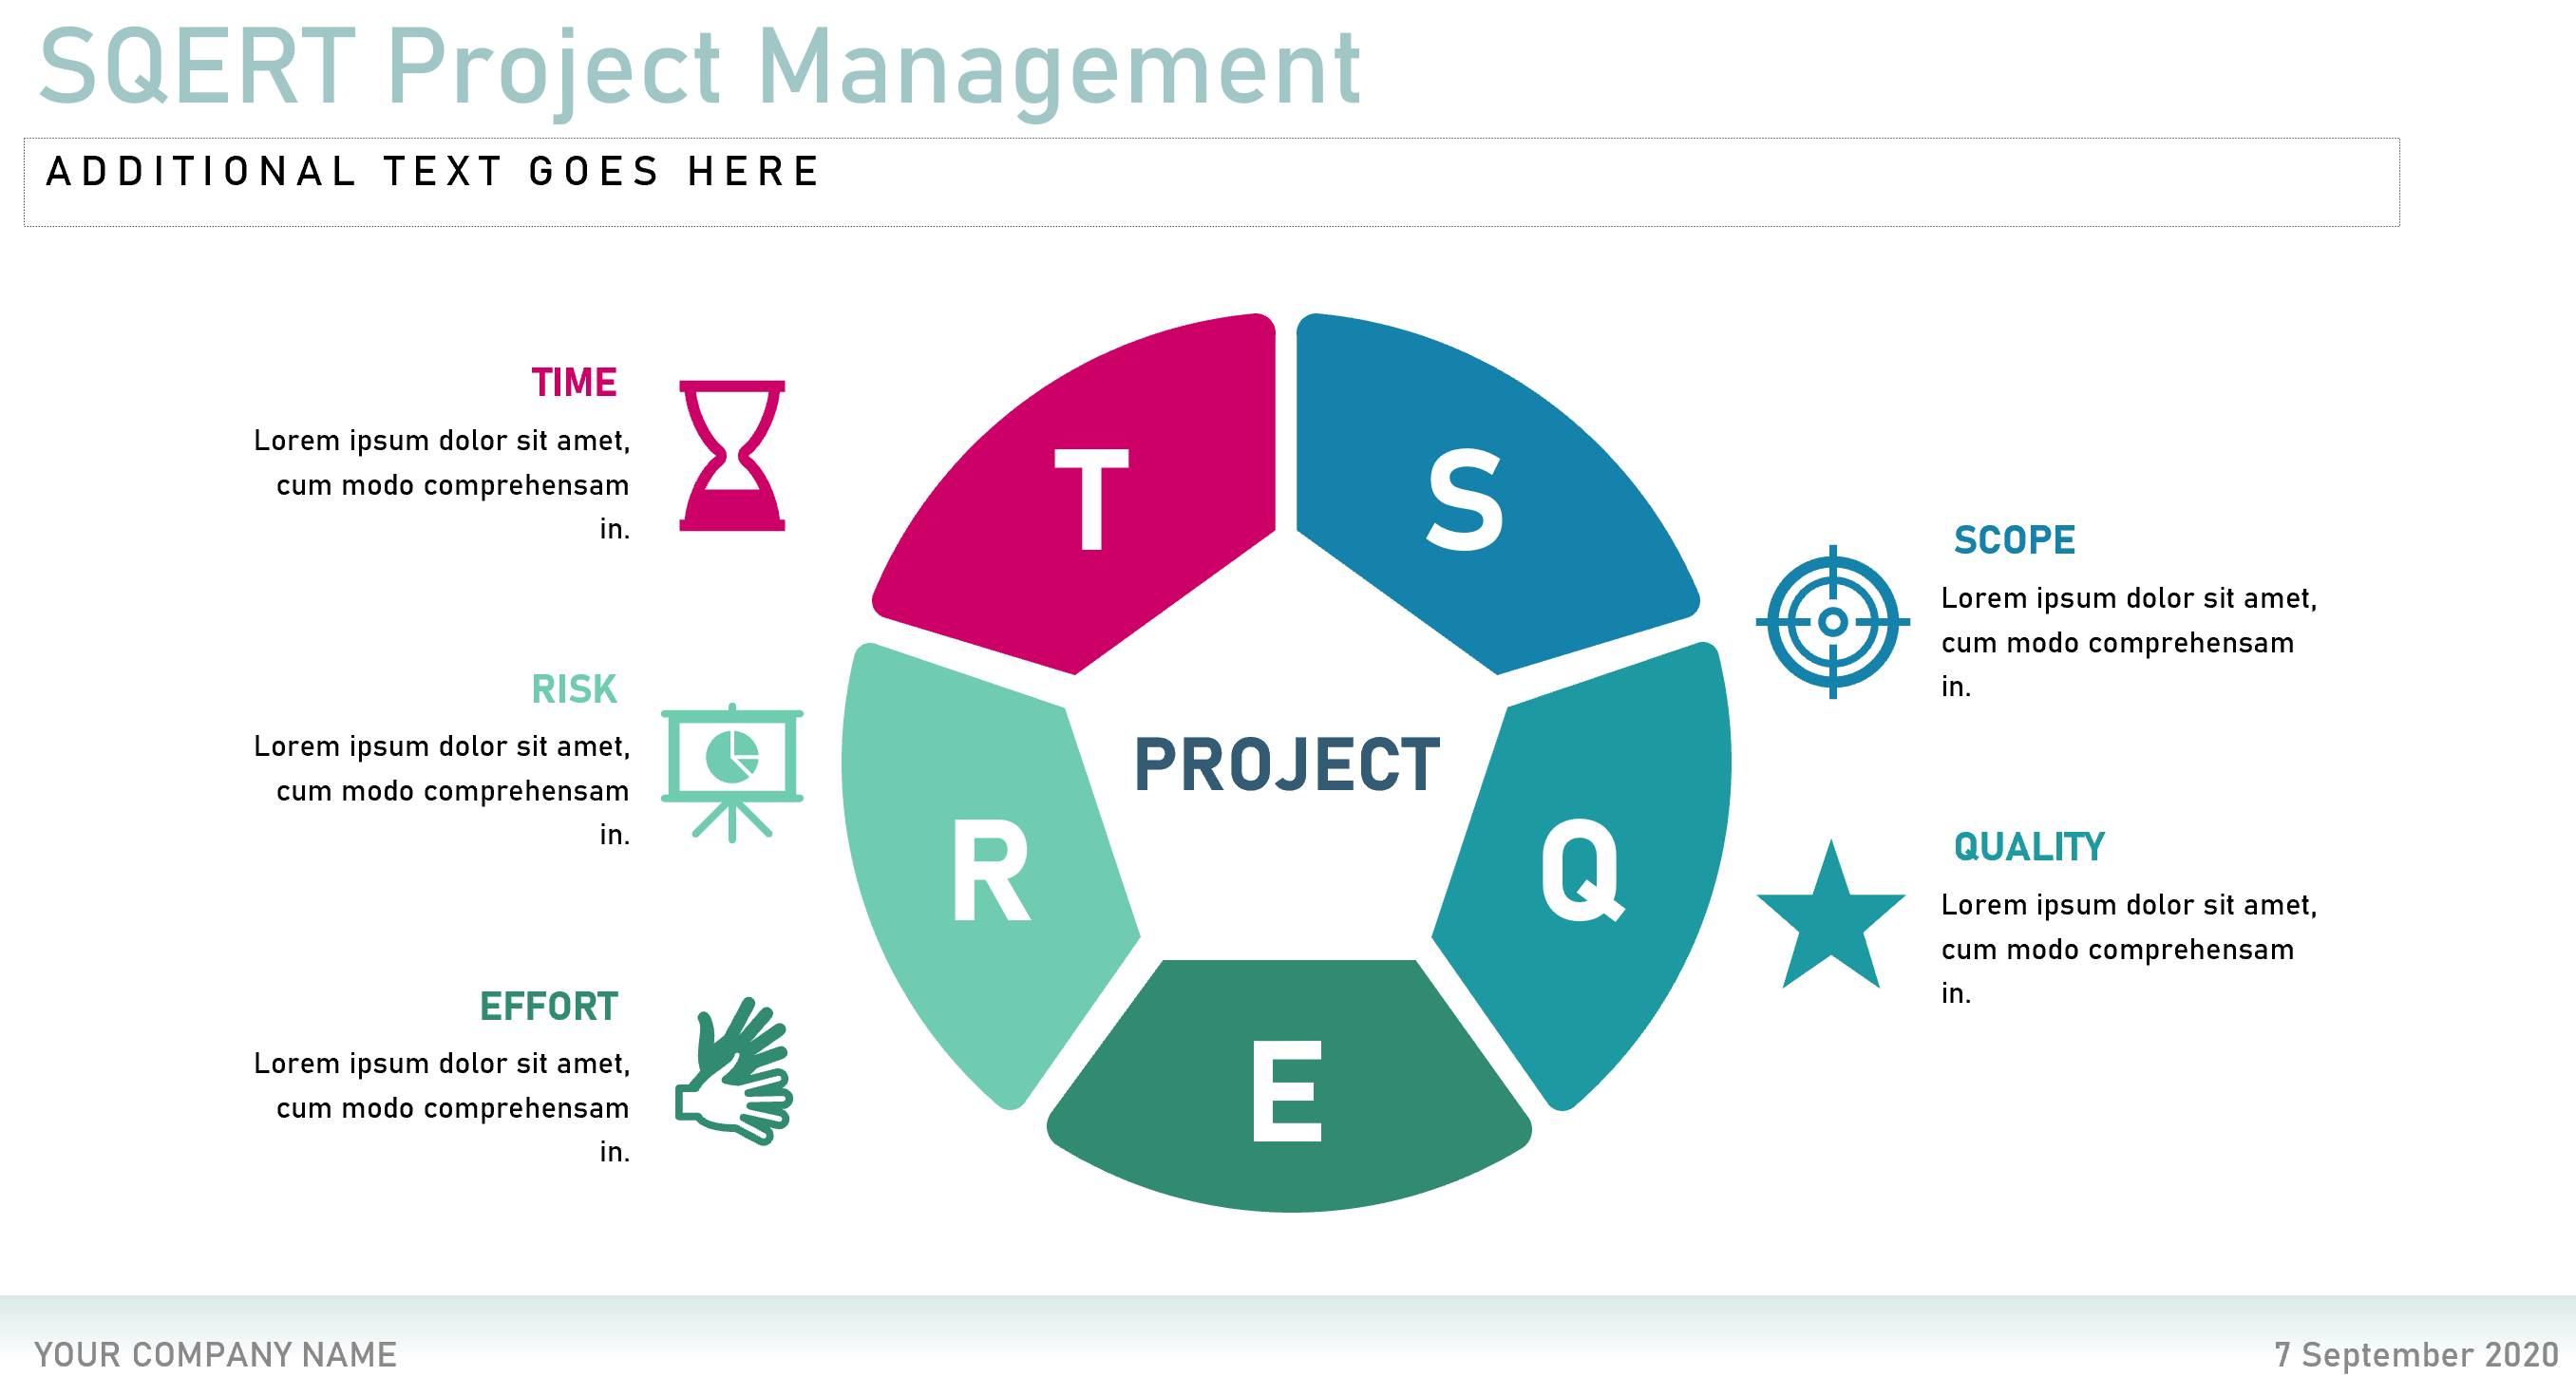 Тест проектное управление. Adobe управление проектами. APM стандарт управление проектами. Проджект менеджмент качество время. General Management.